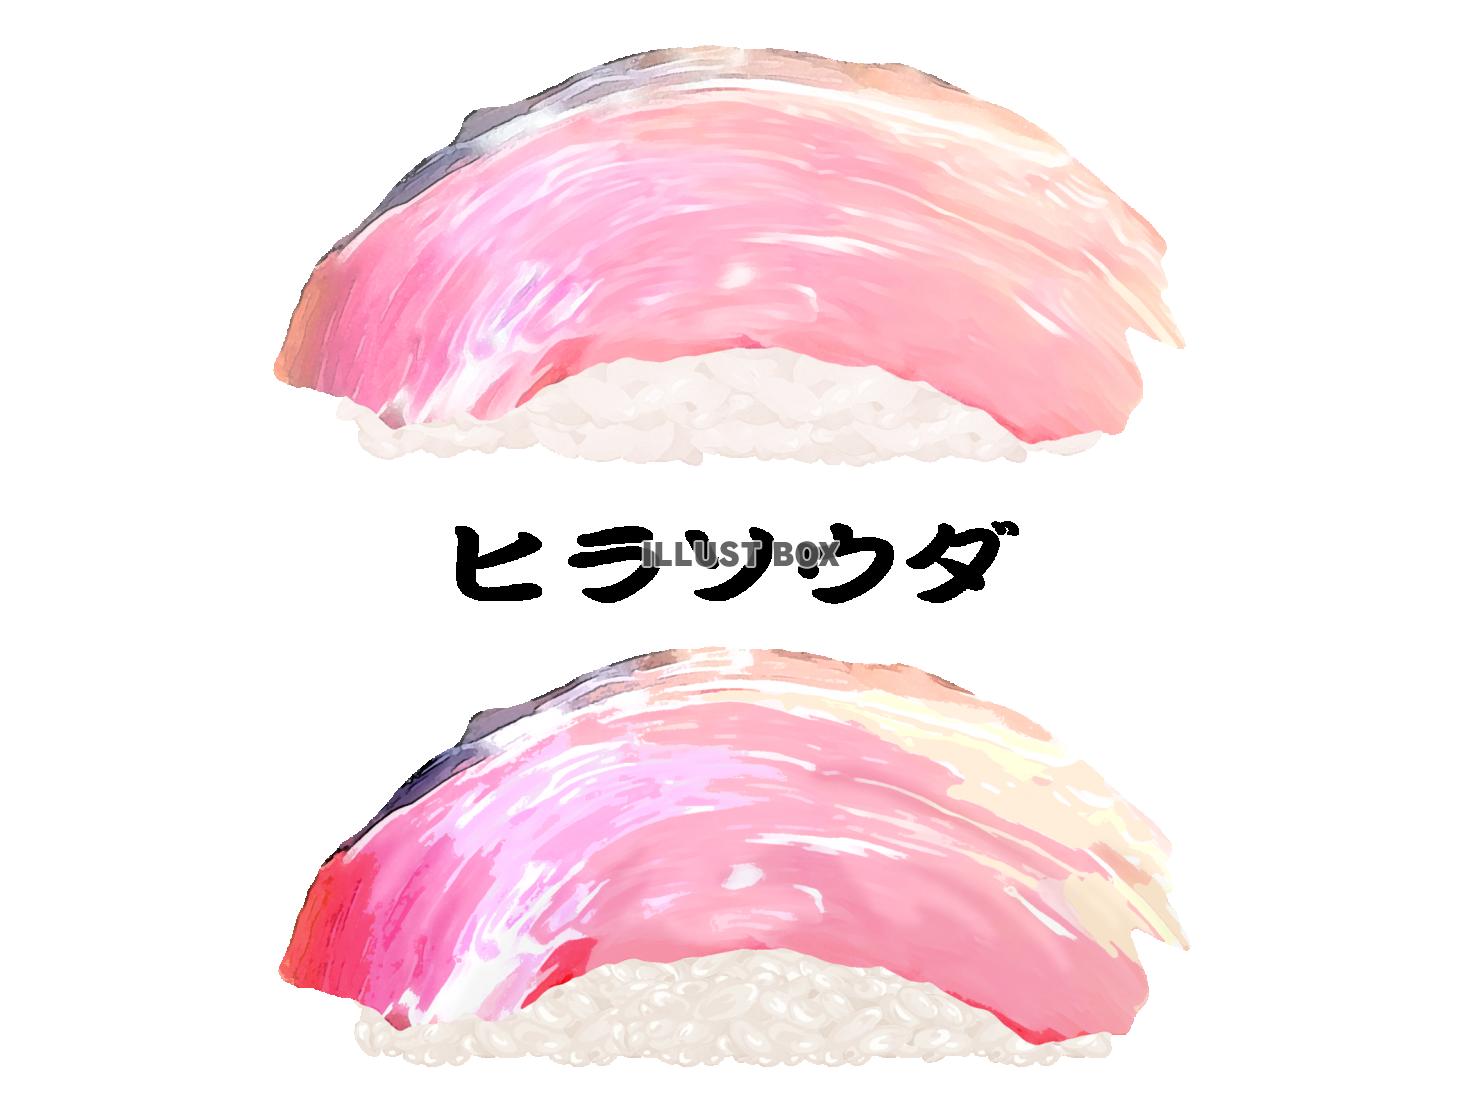 寿司-ヒラソウダ